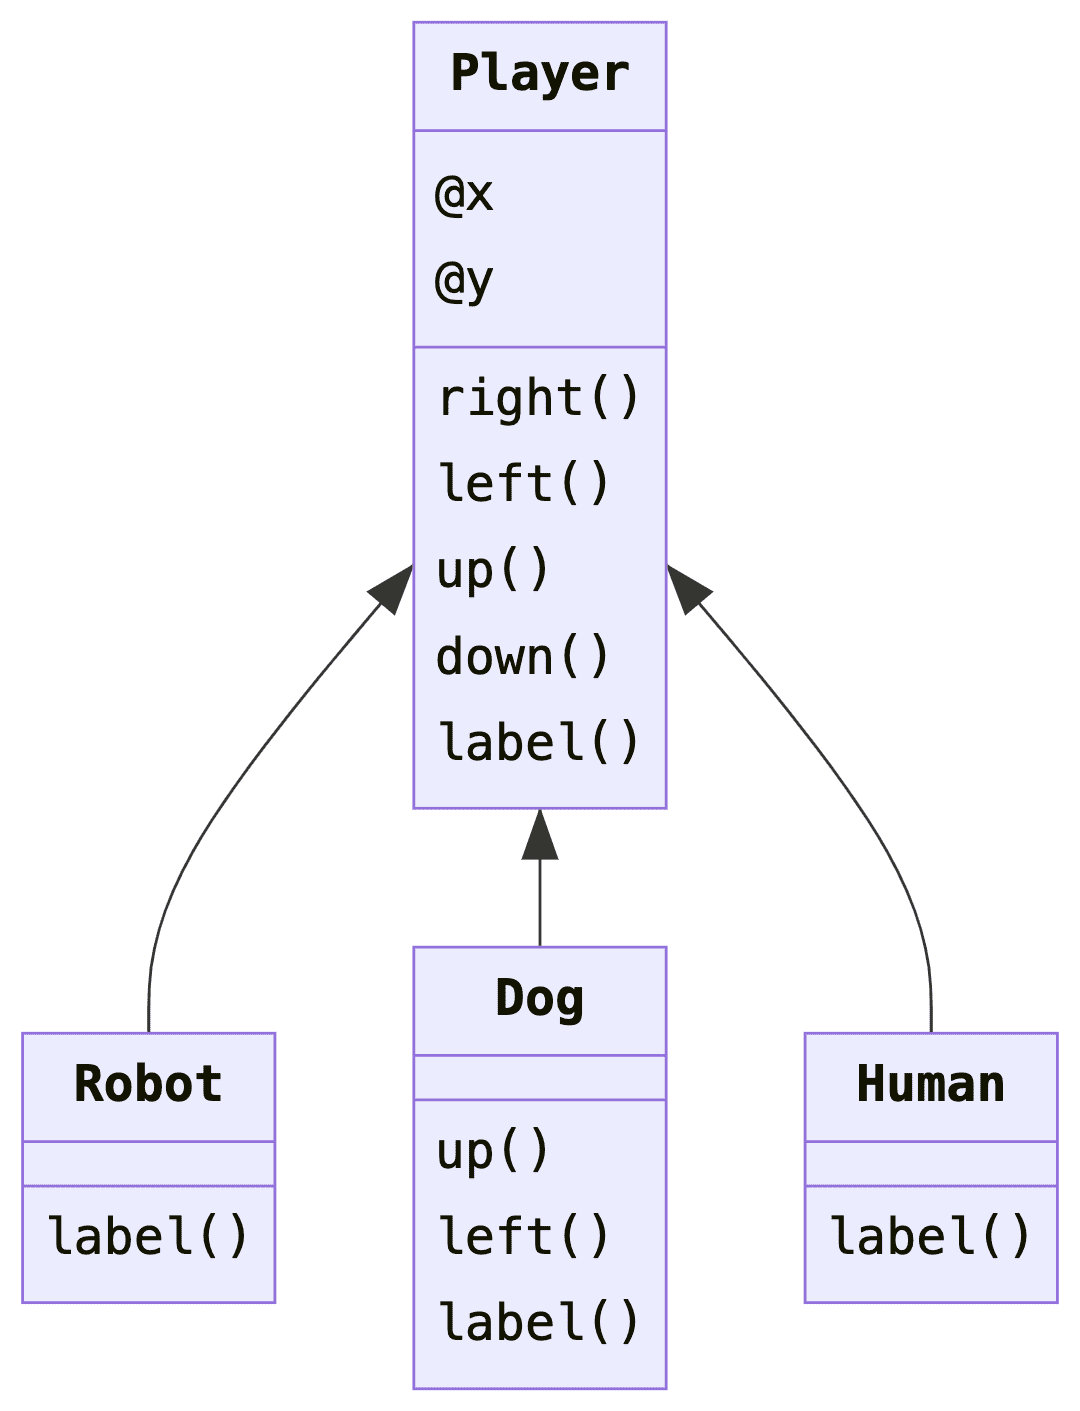 Subtyping/inheritance demo for human/robot/dog game